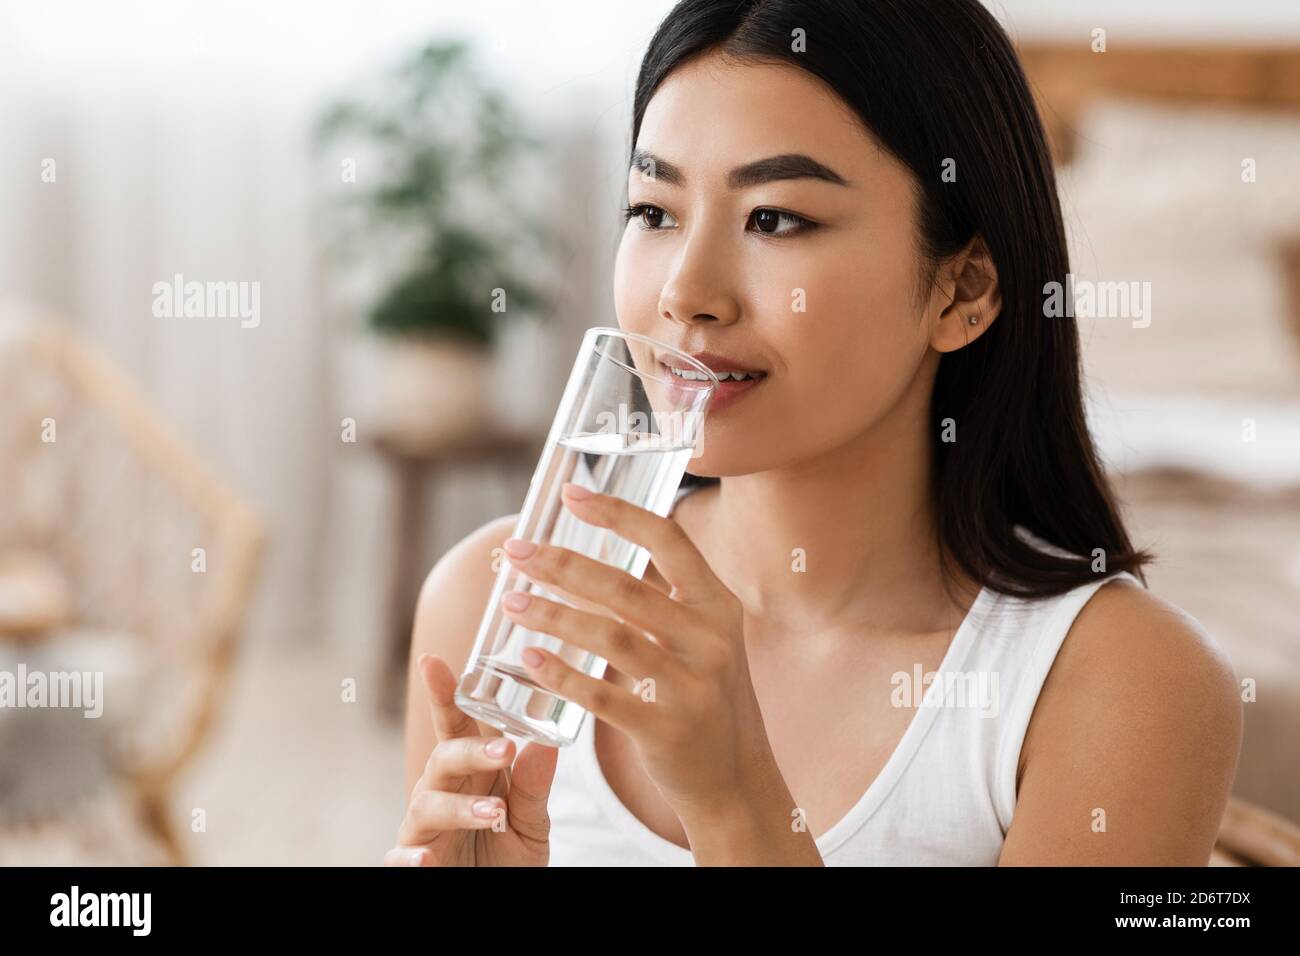 Junge attraktive asiatische Frau Trinkwasser, Kopie psace Stockfoto